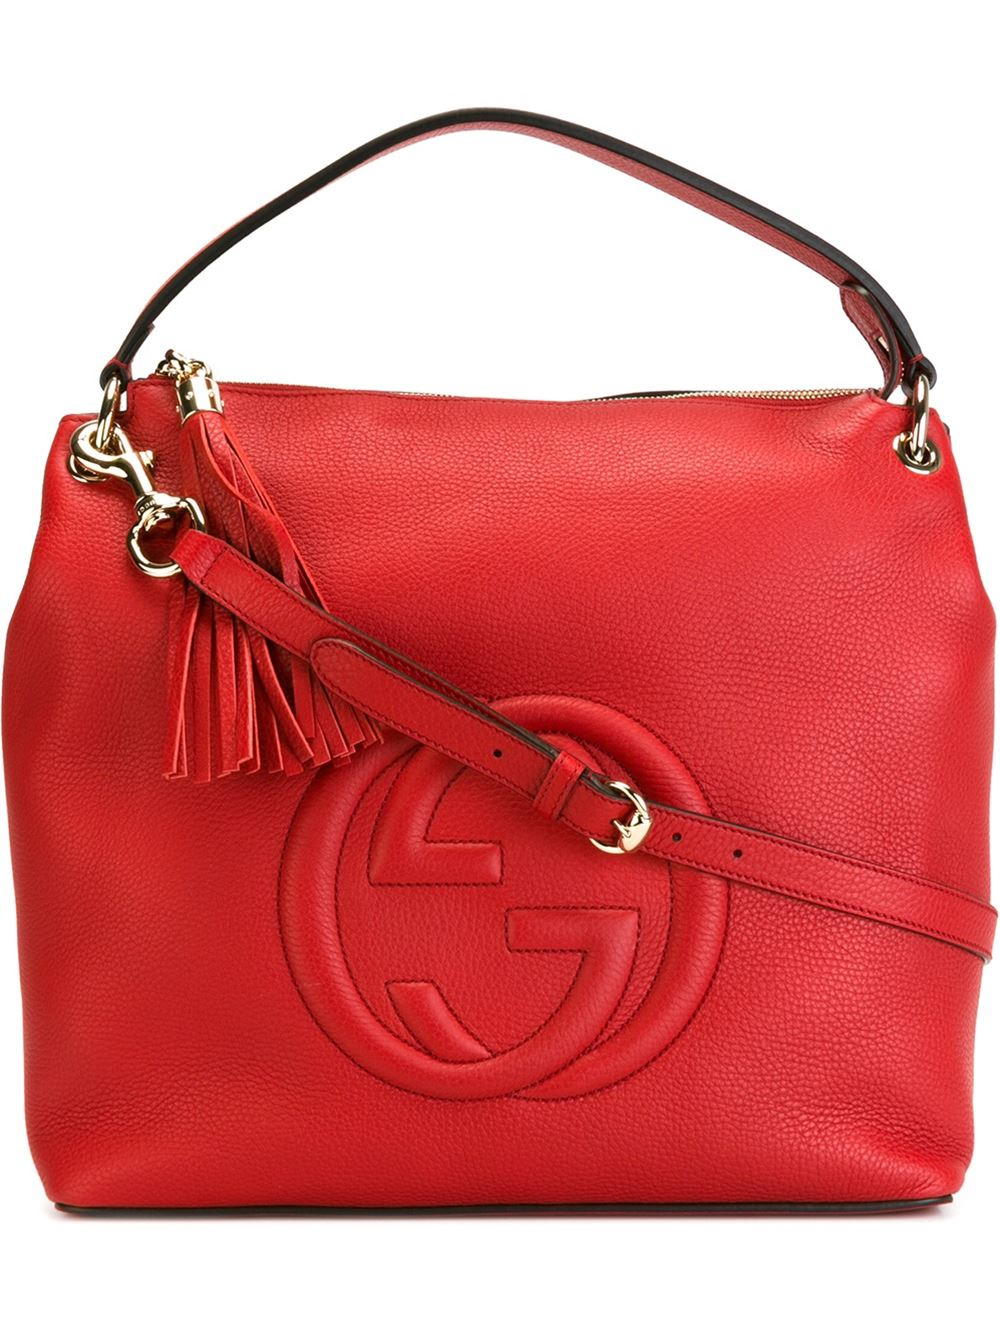 Gucci Handbags BloomingdalesHandbag Reviews 2020